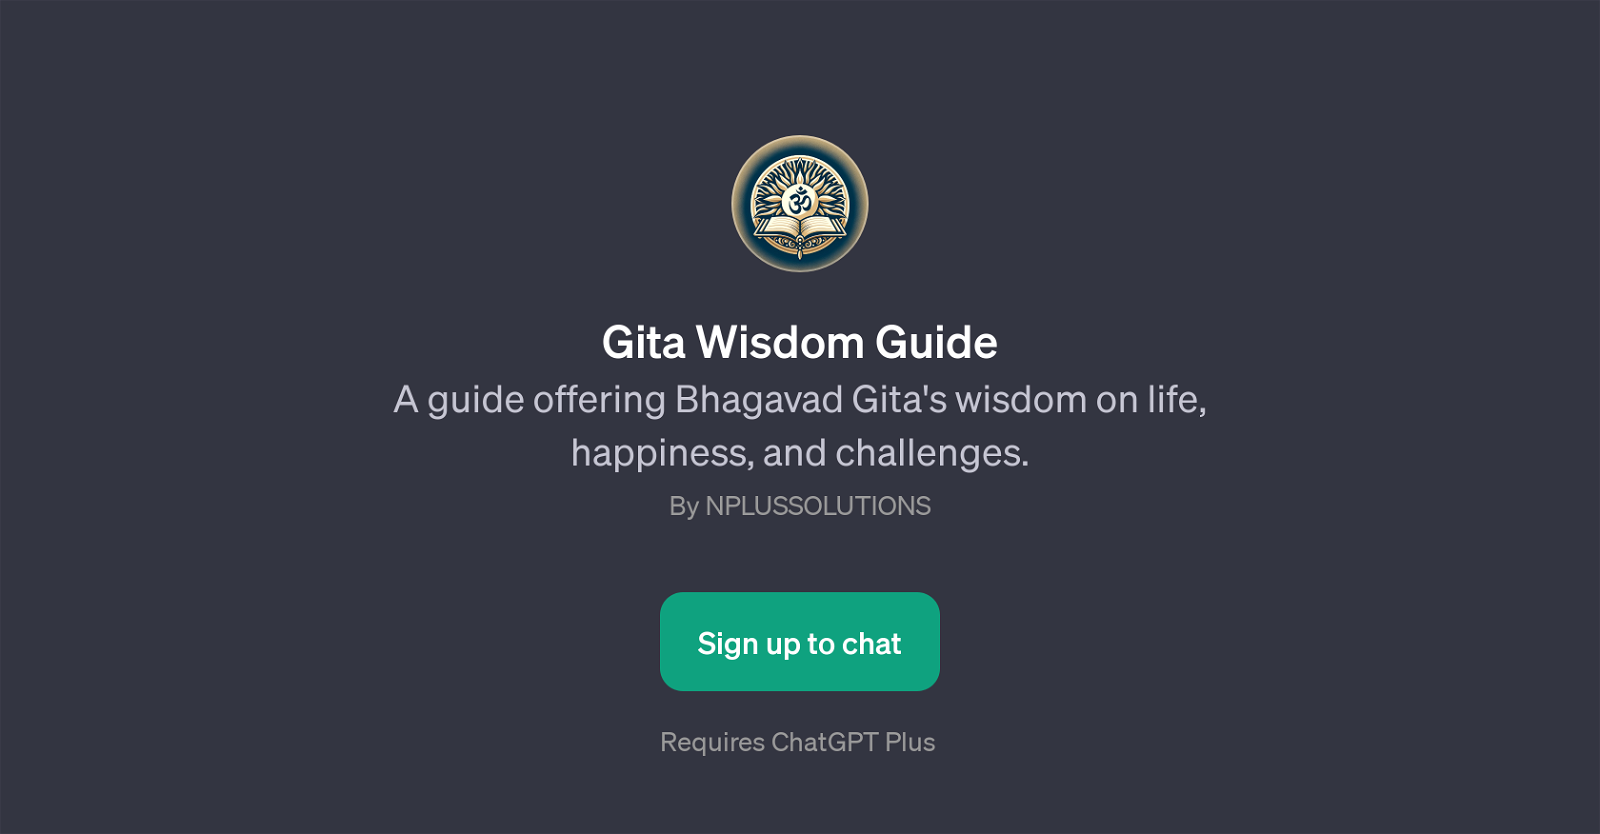 Gita Wisdom Guide website